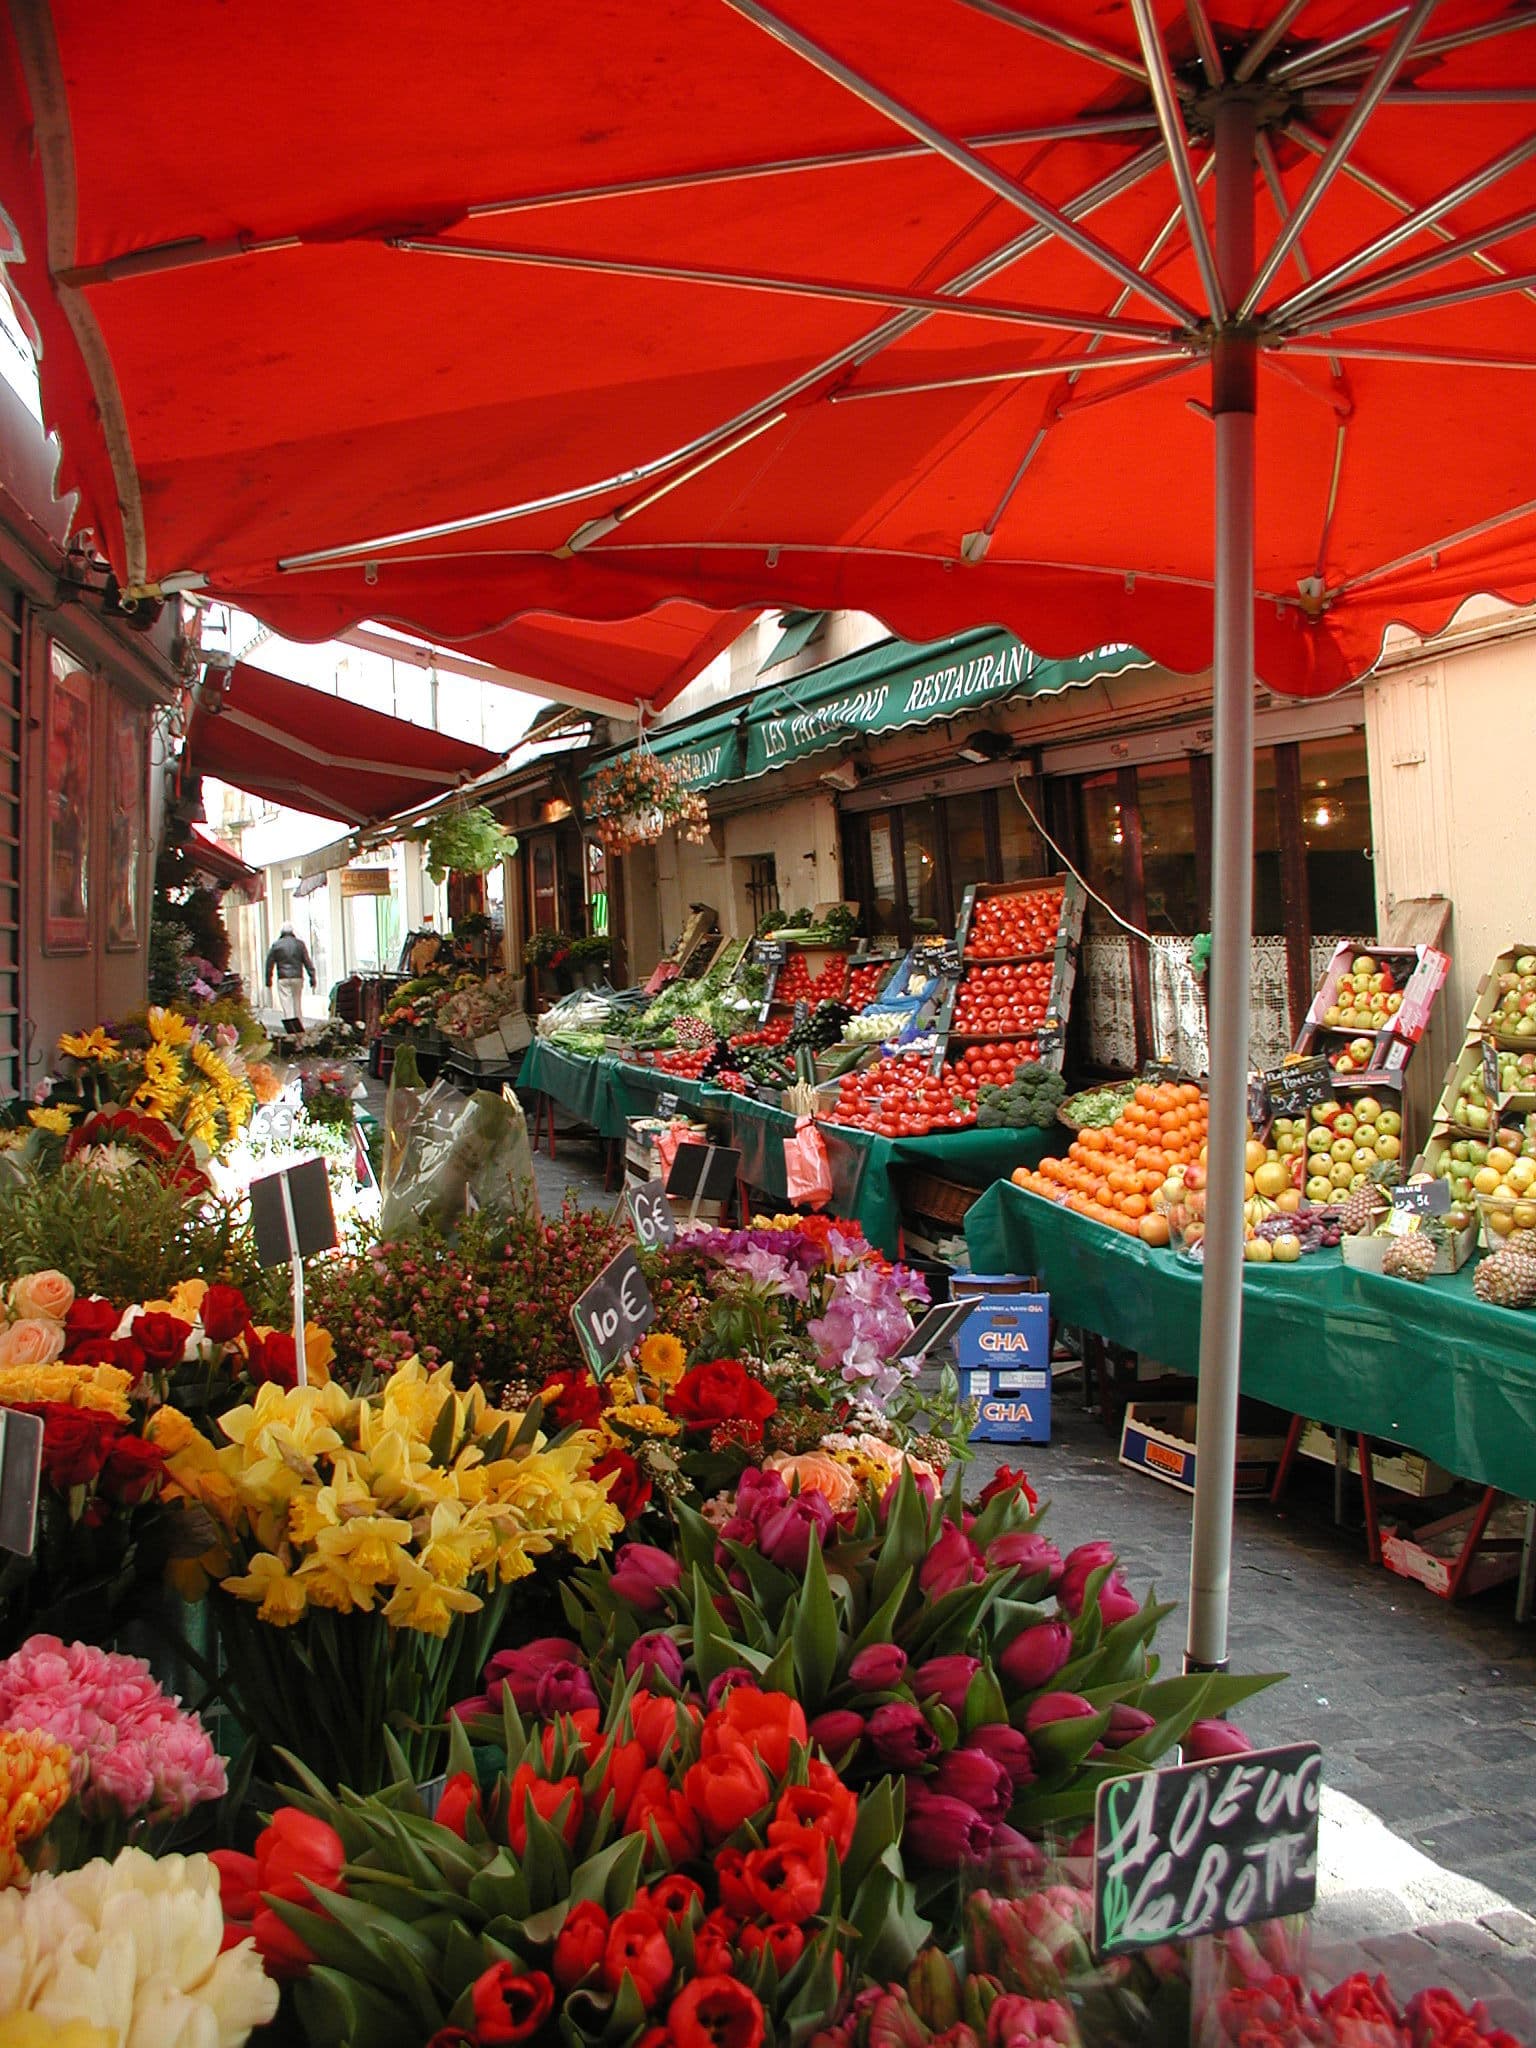 A Parisian market